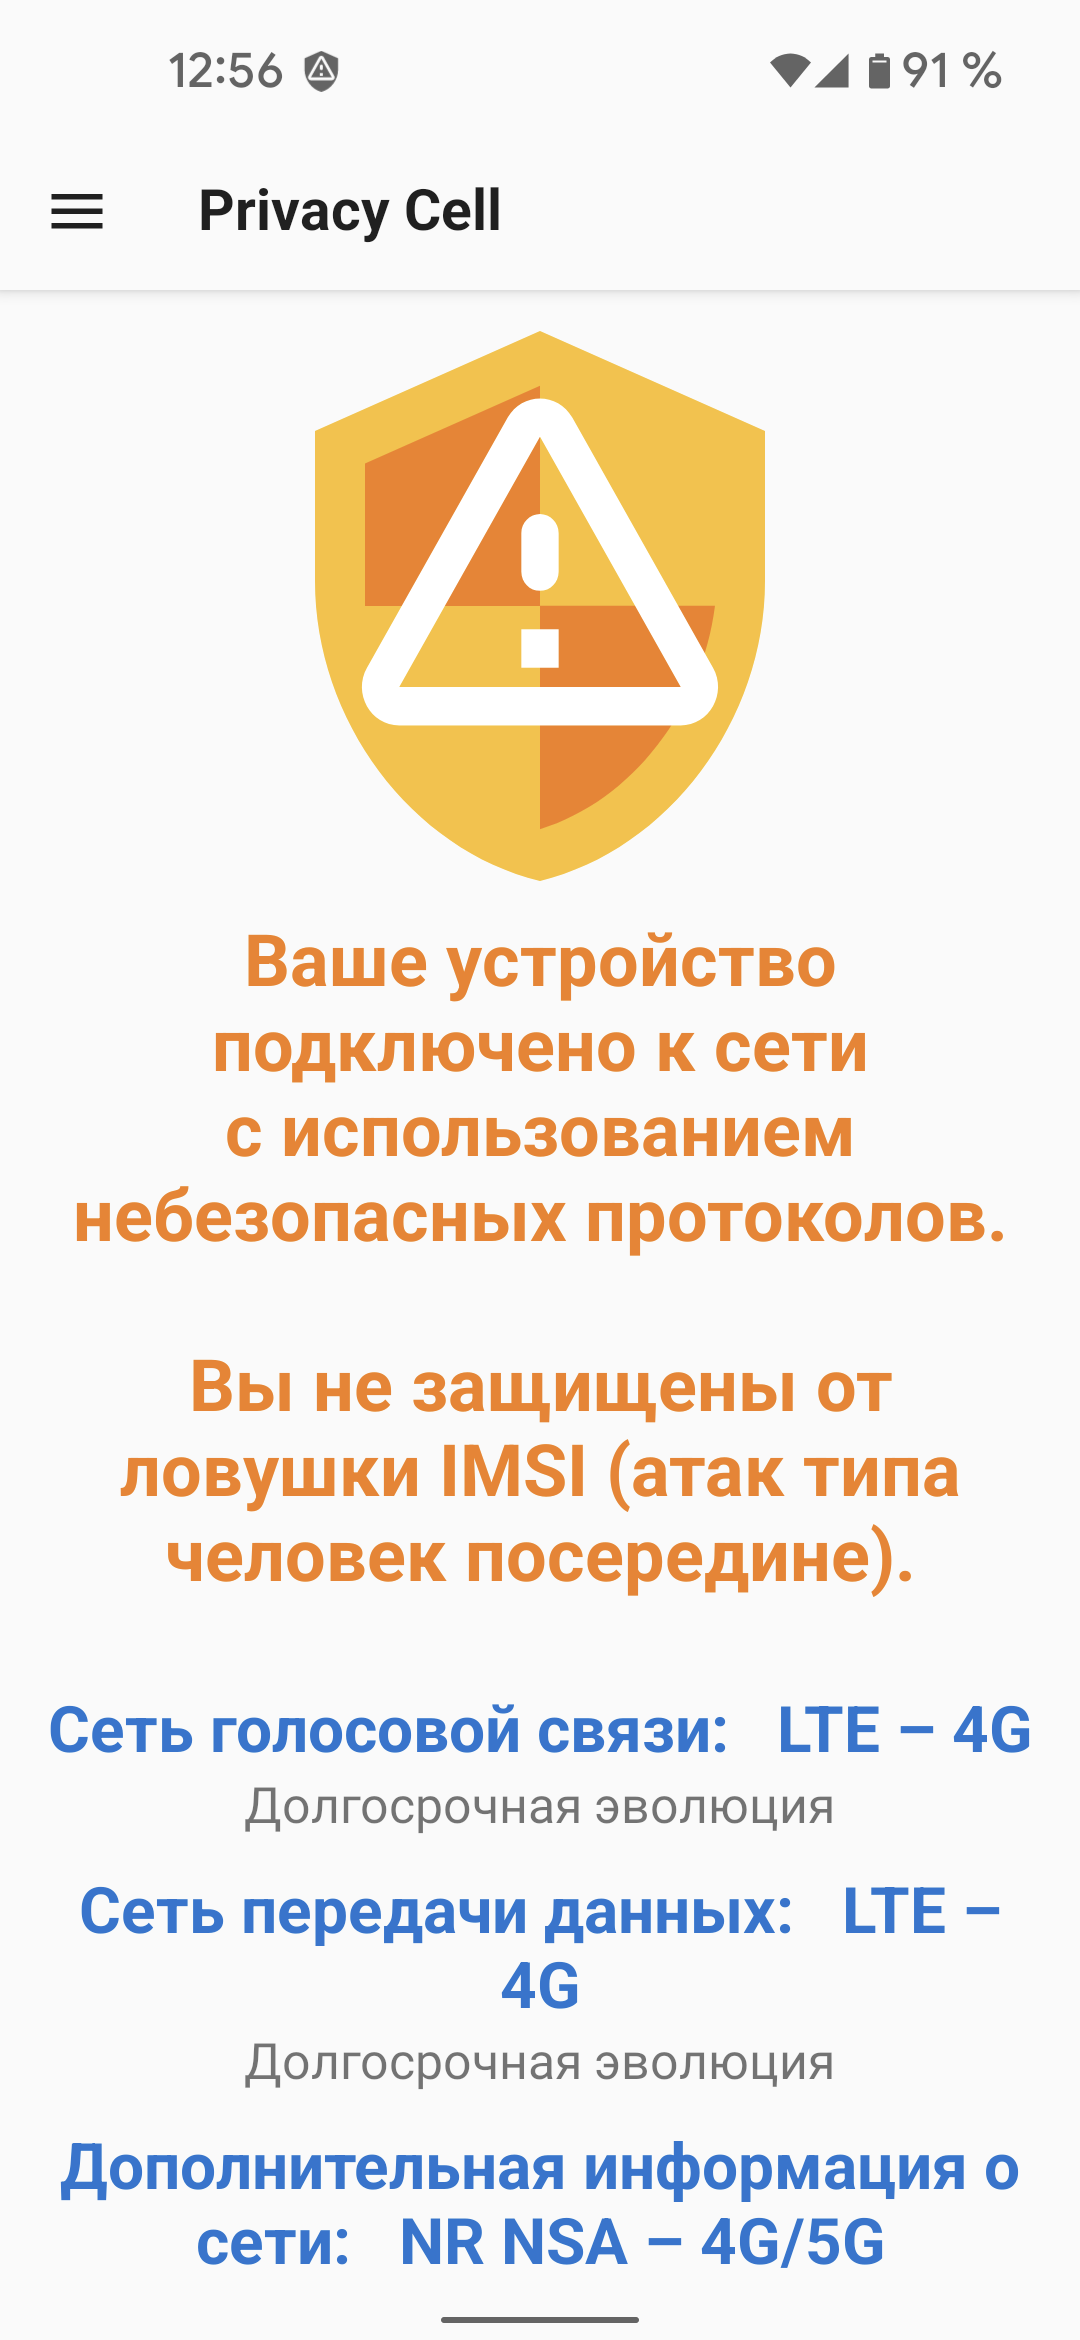 fastlane/metadata/android/ru-RU/images/phoneScreenshots/02-InsecureNetwork-ru.png